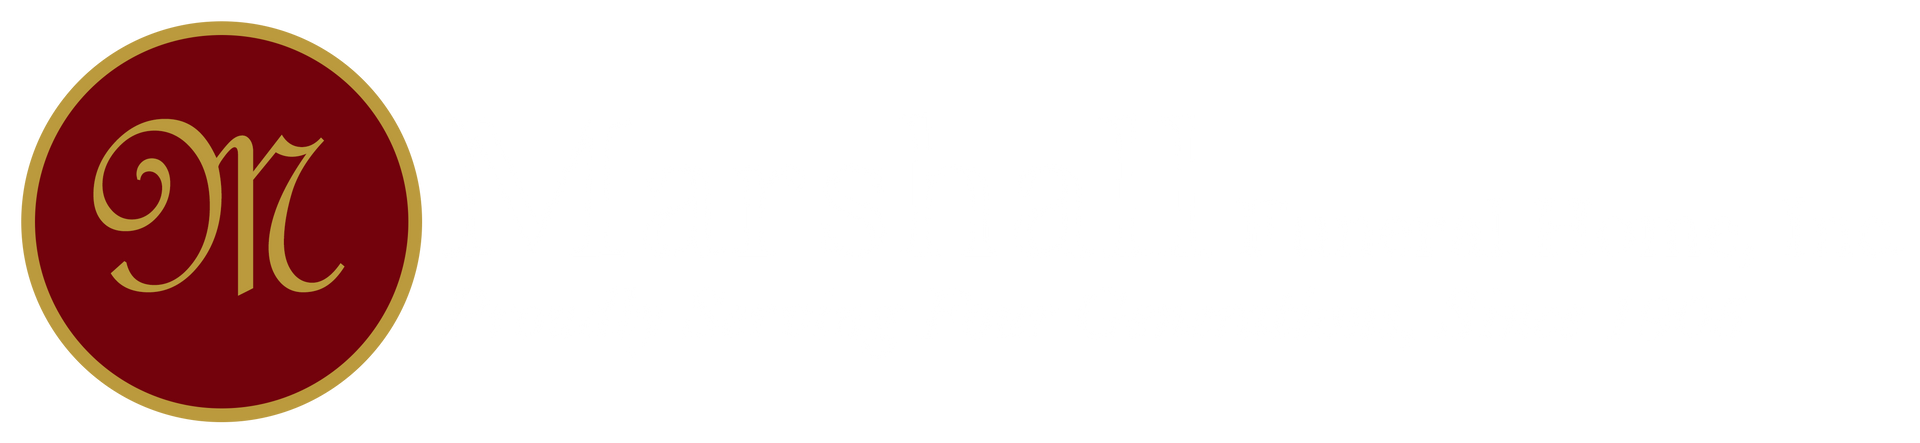 Marshall Funeral Home, Inc. Logo